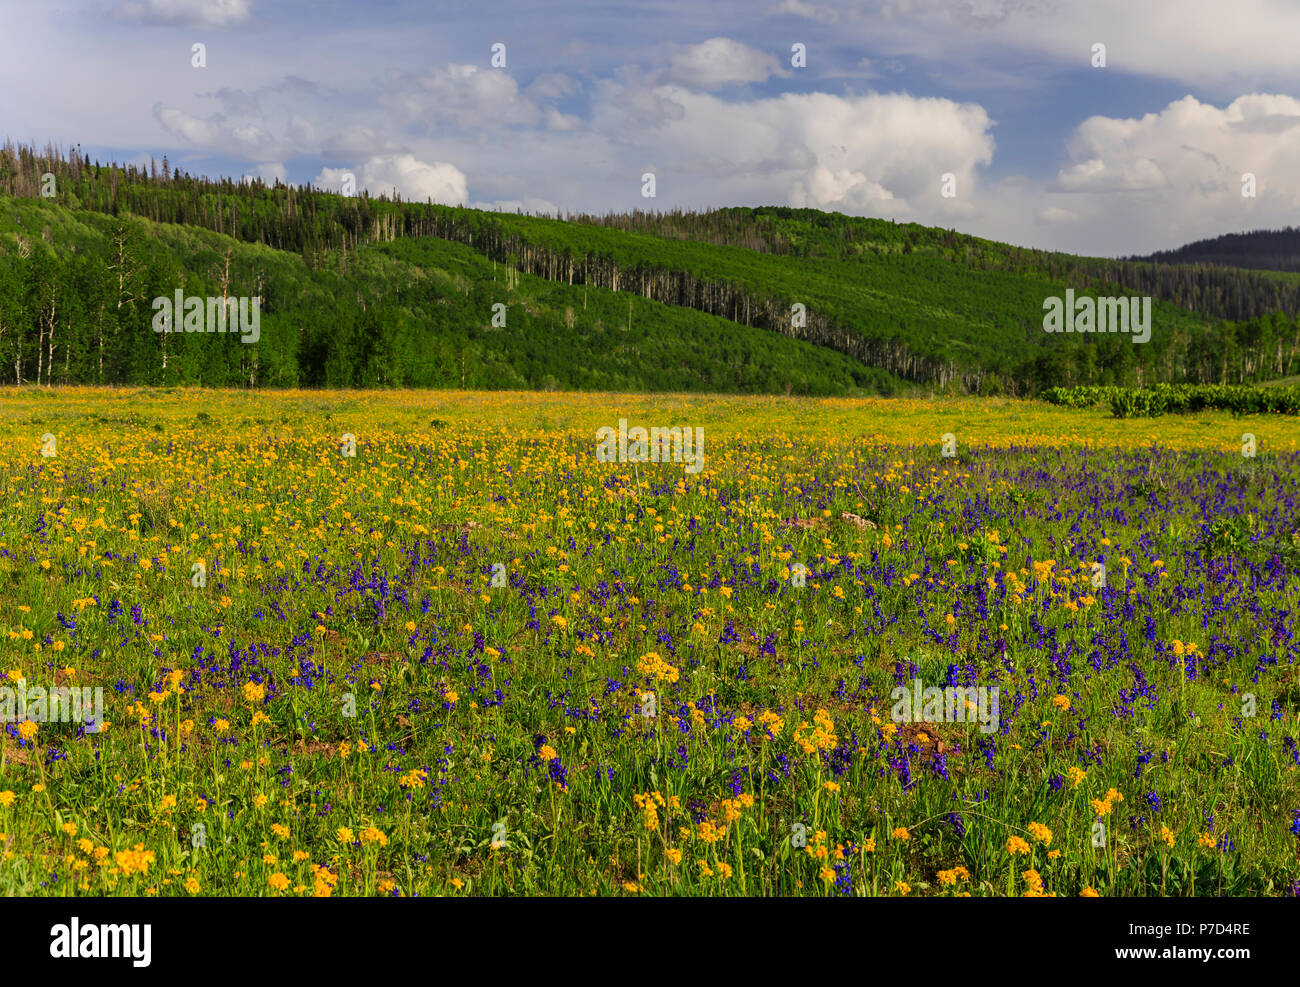 Un prato di fiori selvaggi in pietra ollare Bacino del nord dello Utah, Stati Uniti d'America. Questa foto mostra la Groundsel giallo e viola Larkspur dell'area. Foto Stock